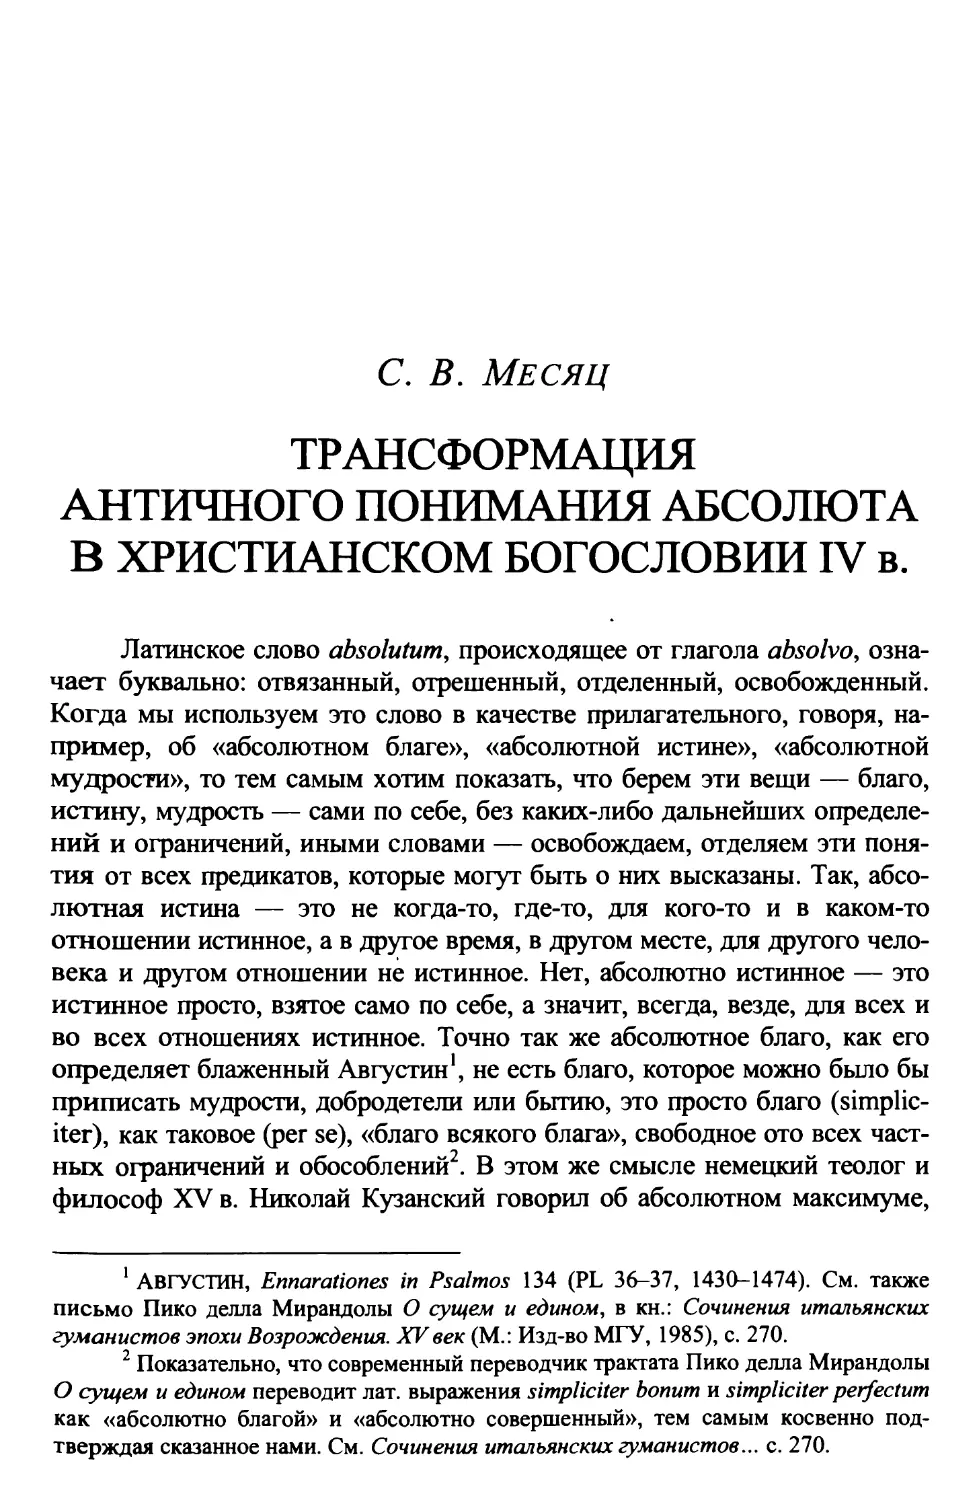 Месяц С.В. Трансформация античного понимания Абсолюта в христианском богословии IV века